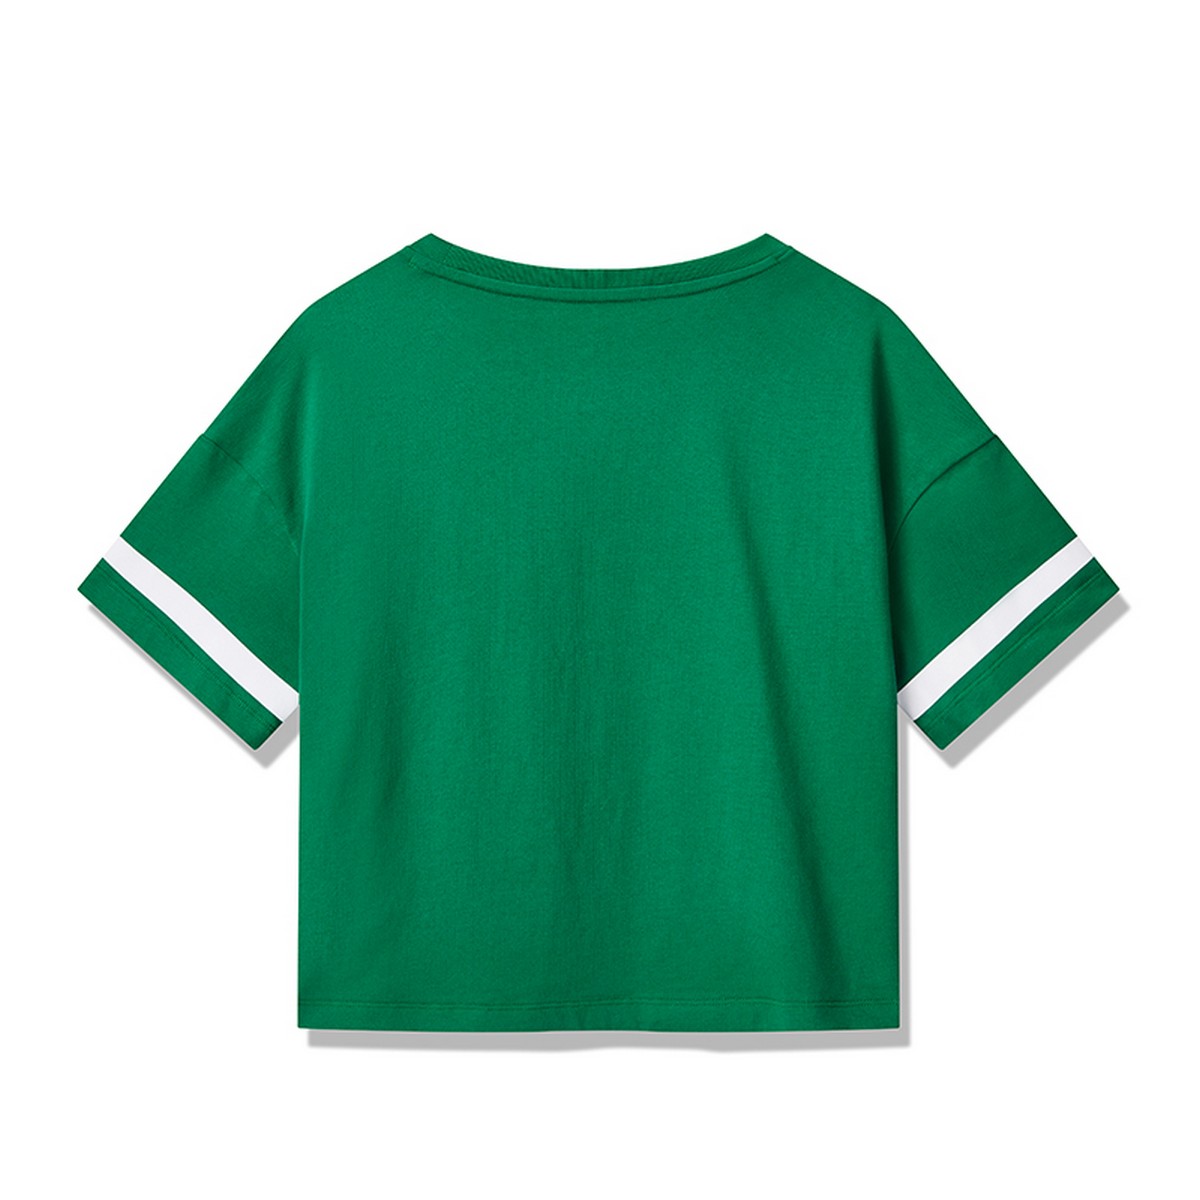 【雪碧】安踏女款t恤2020夏季新款sprite联名款运动女短袖